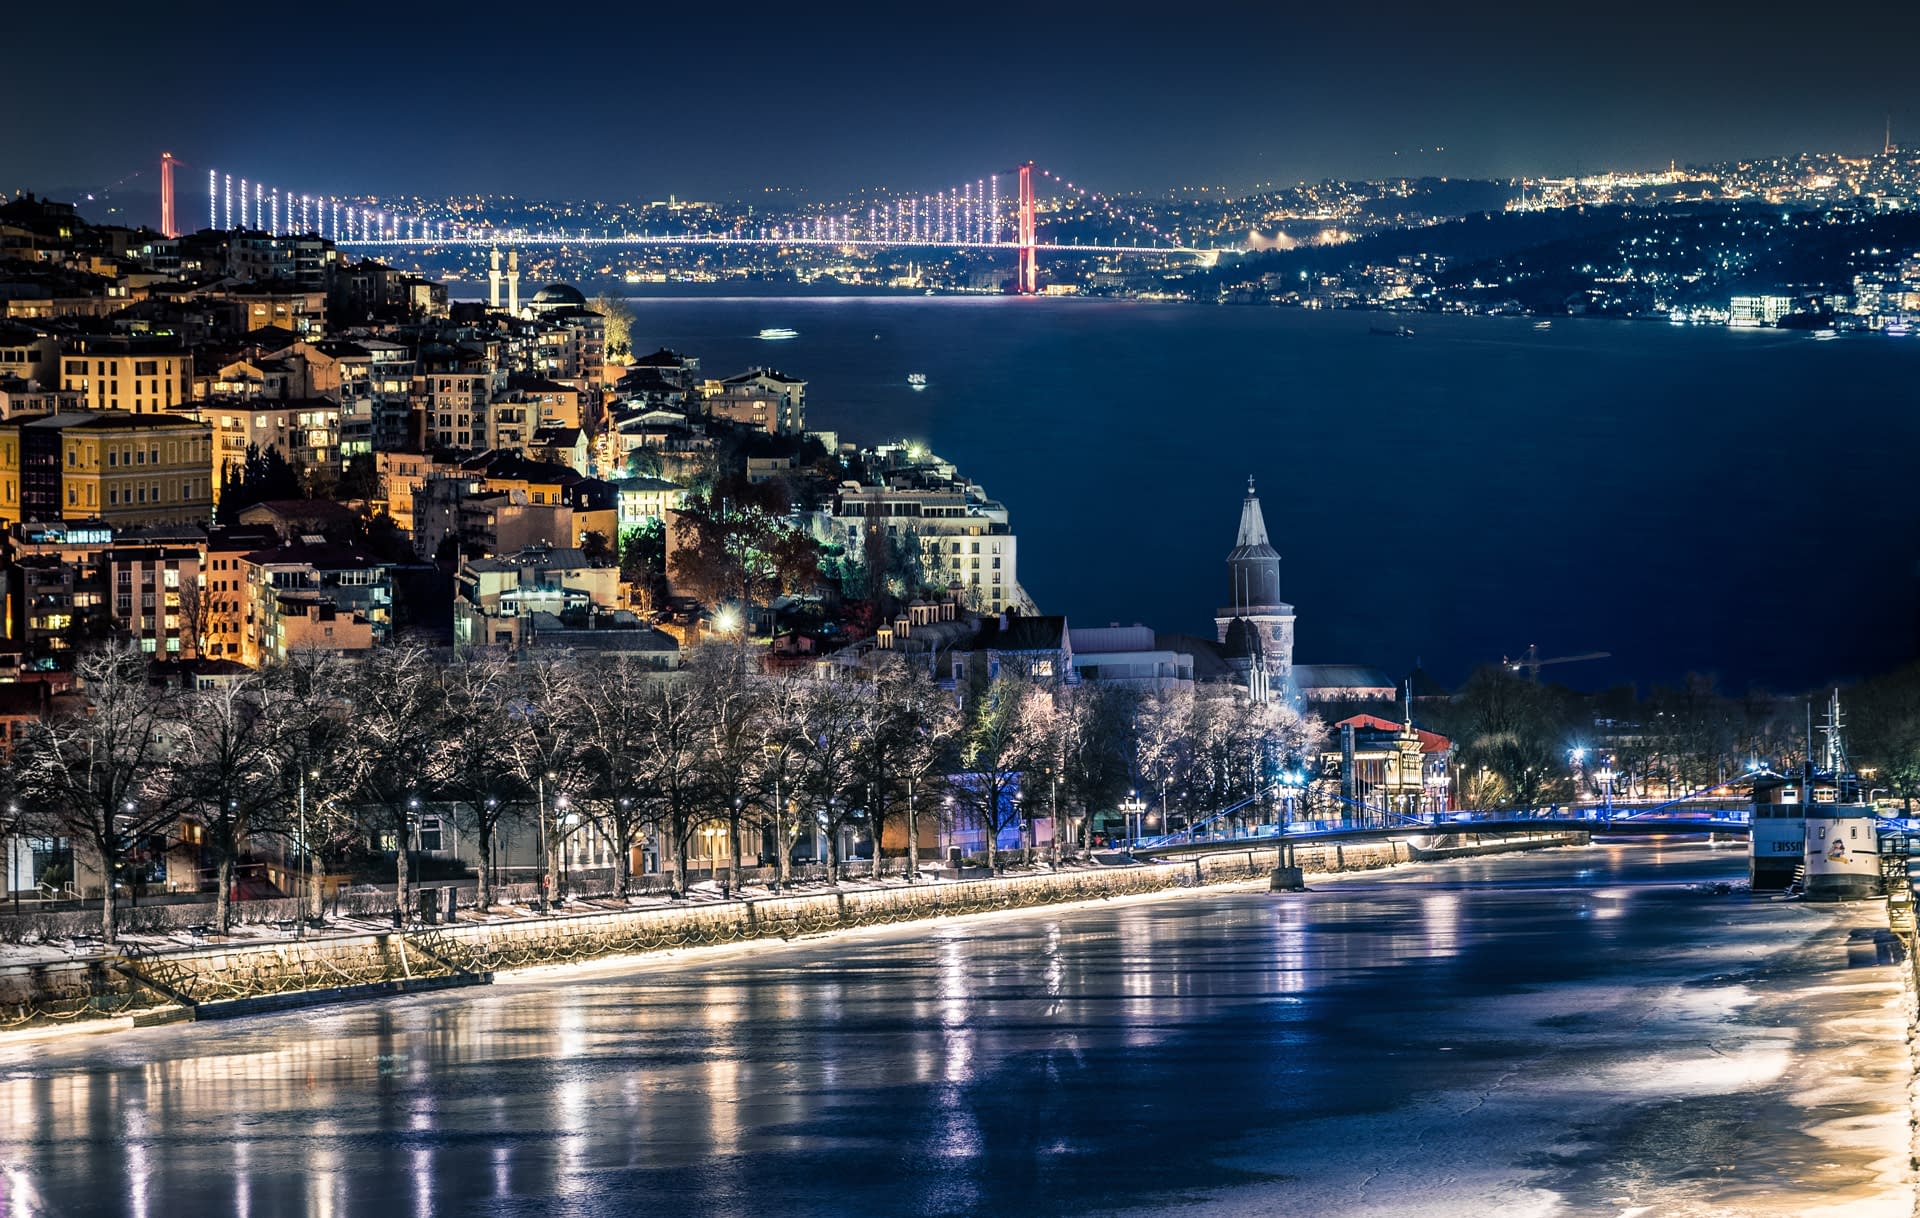 Yhdistelmäkuva öisestä Turusta ja Istanbulista joka on tehty Photoshopilla